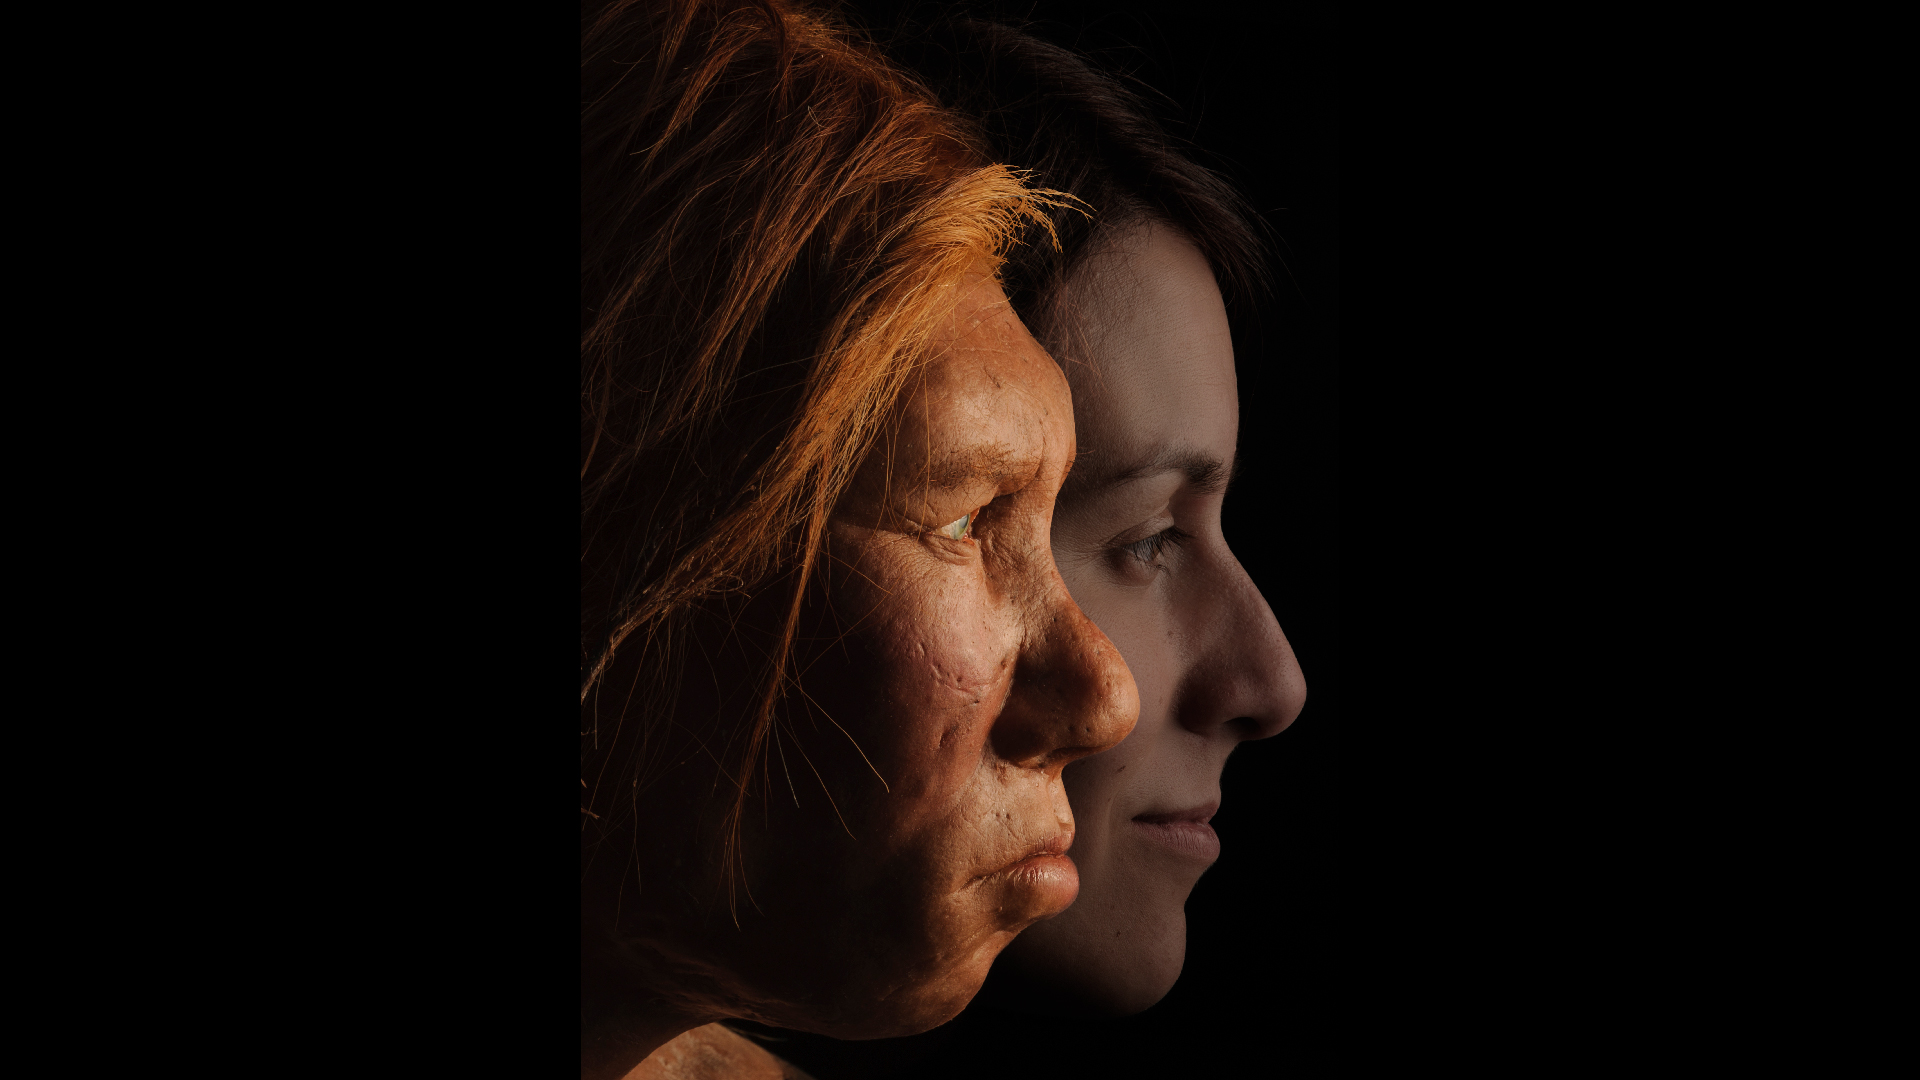 Uma recriação de uma mulher neandertal ao lado de um humano moderno. A mulher neandertal tem cabelos ruivos e pele avermelhada.